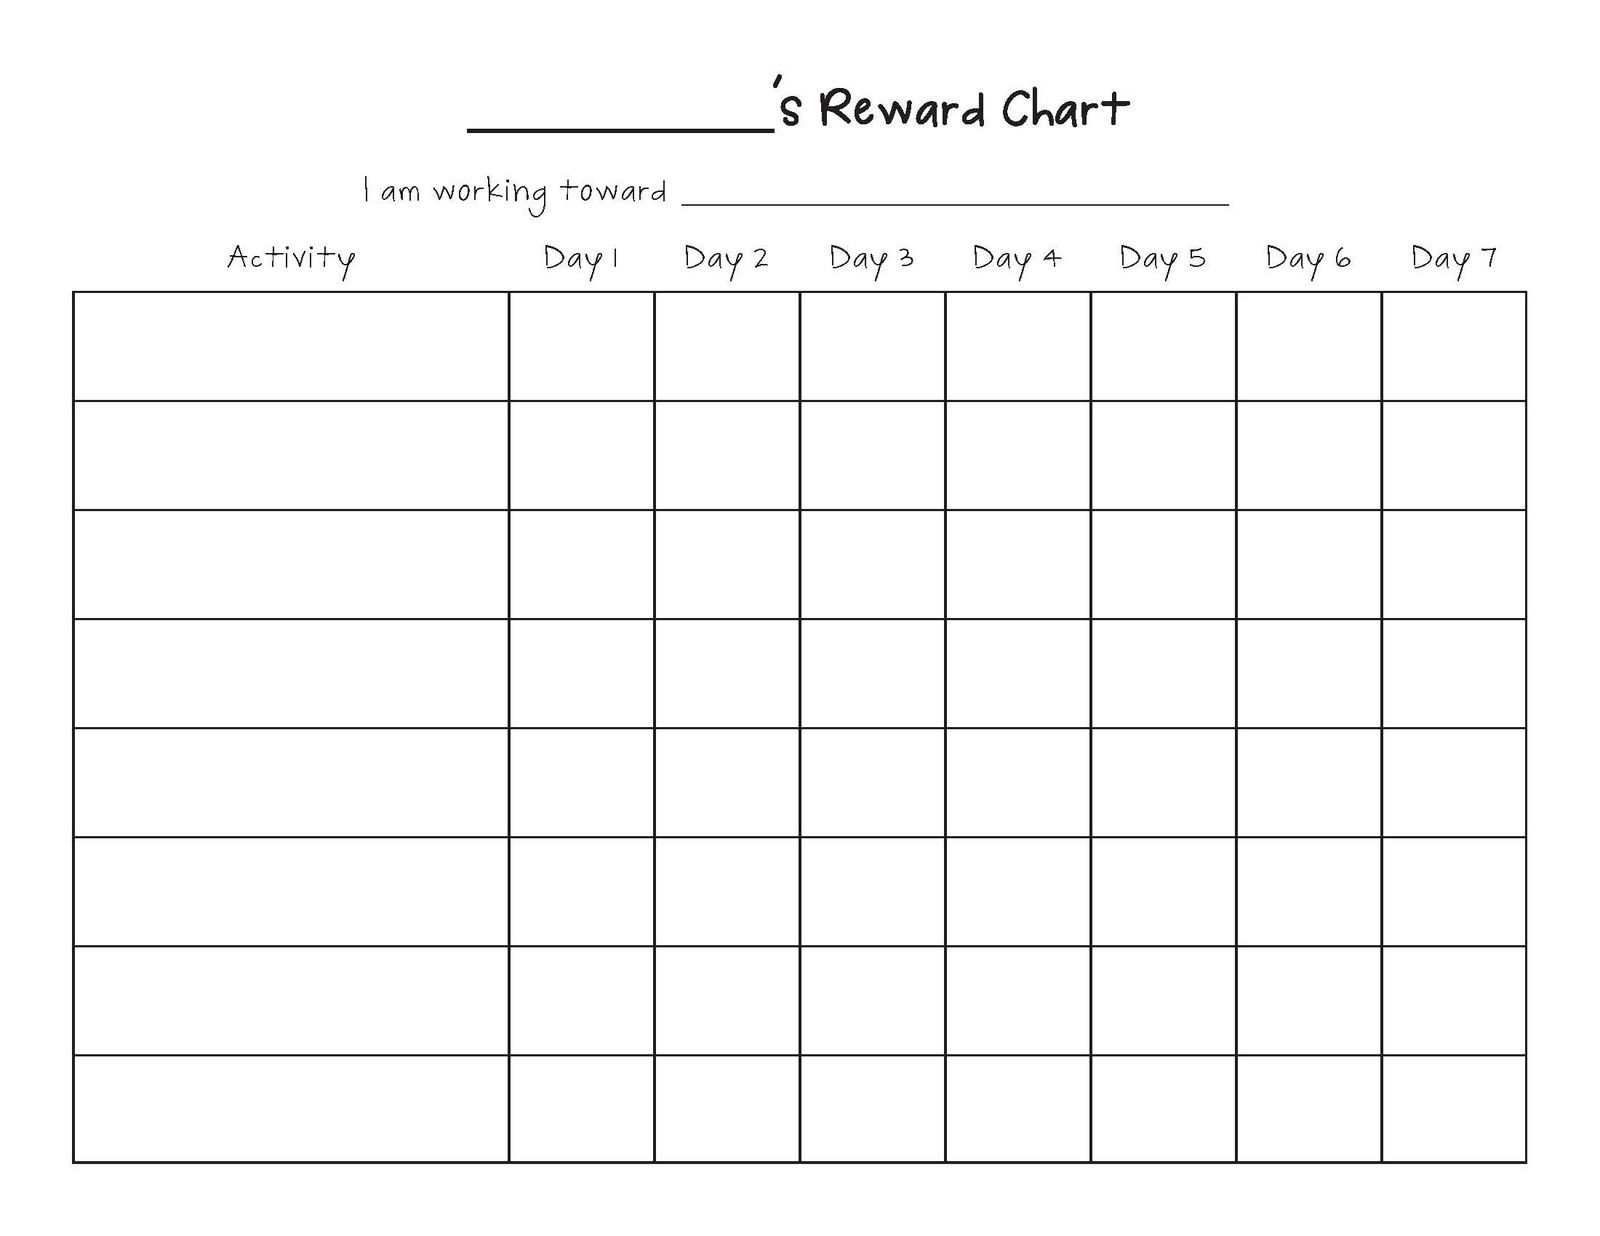 Free Printable Blank Charts | Printable Blank Charts Image Search - Free Printable Reward Charts